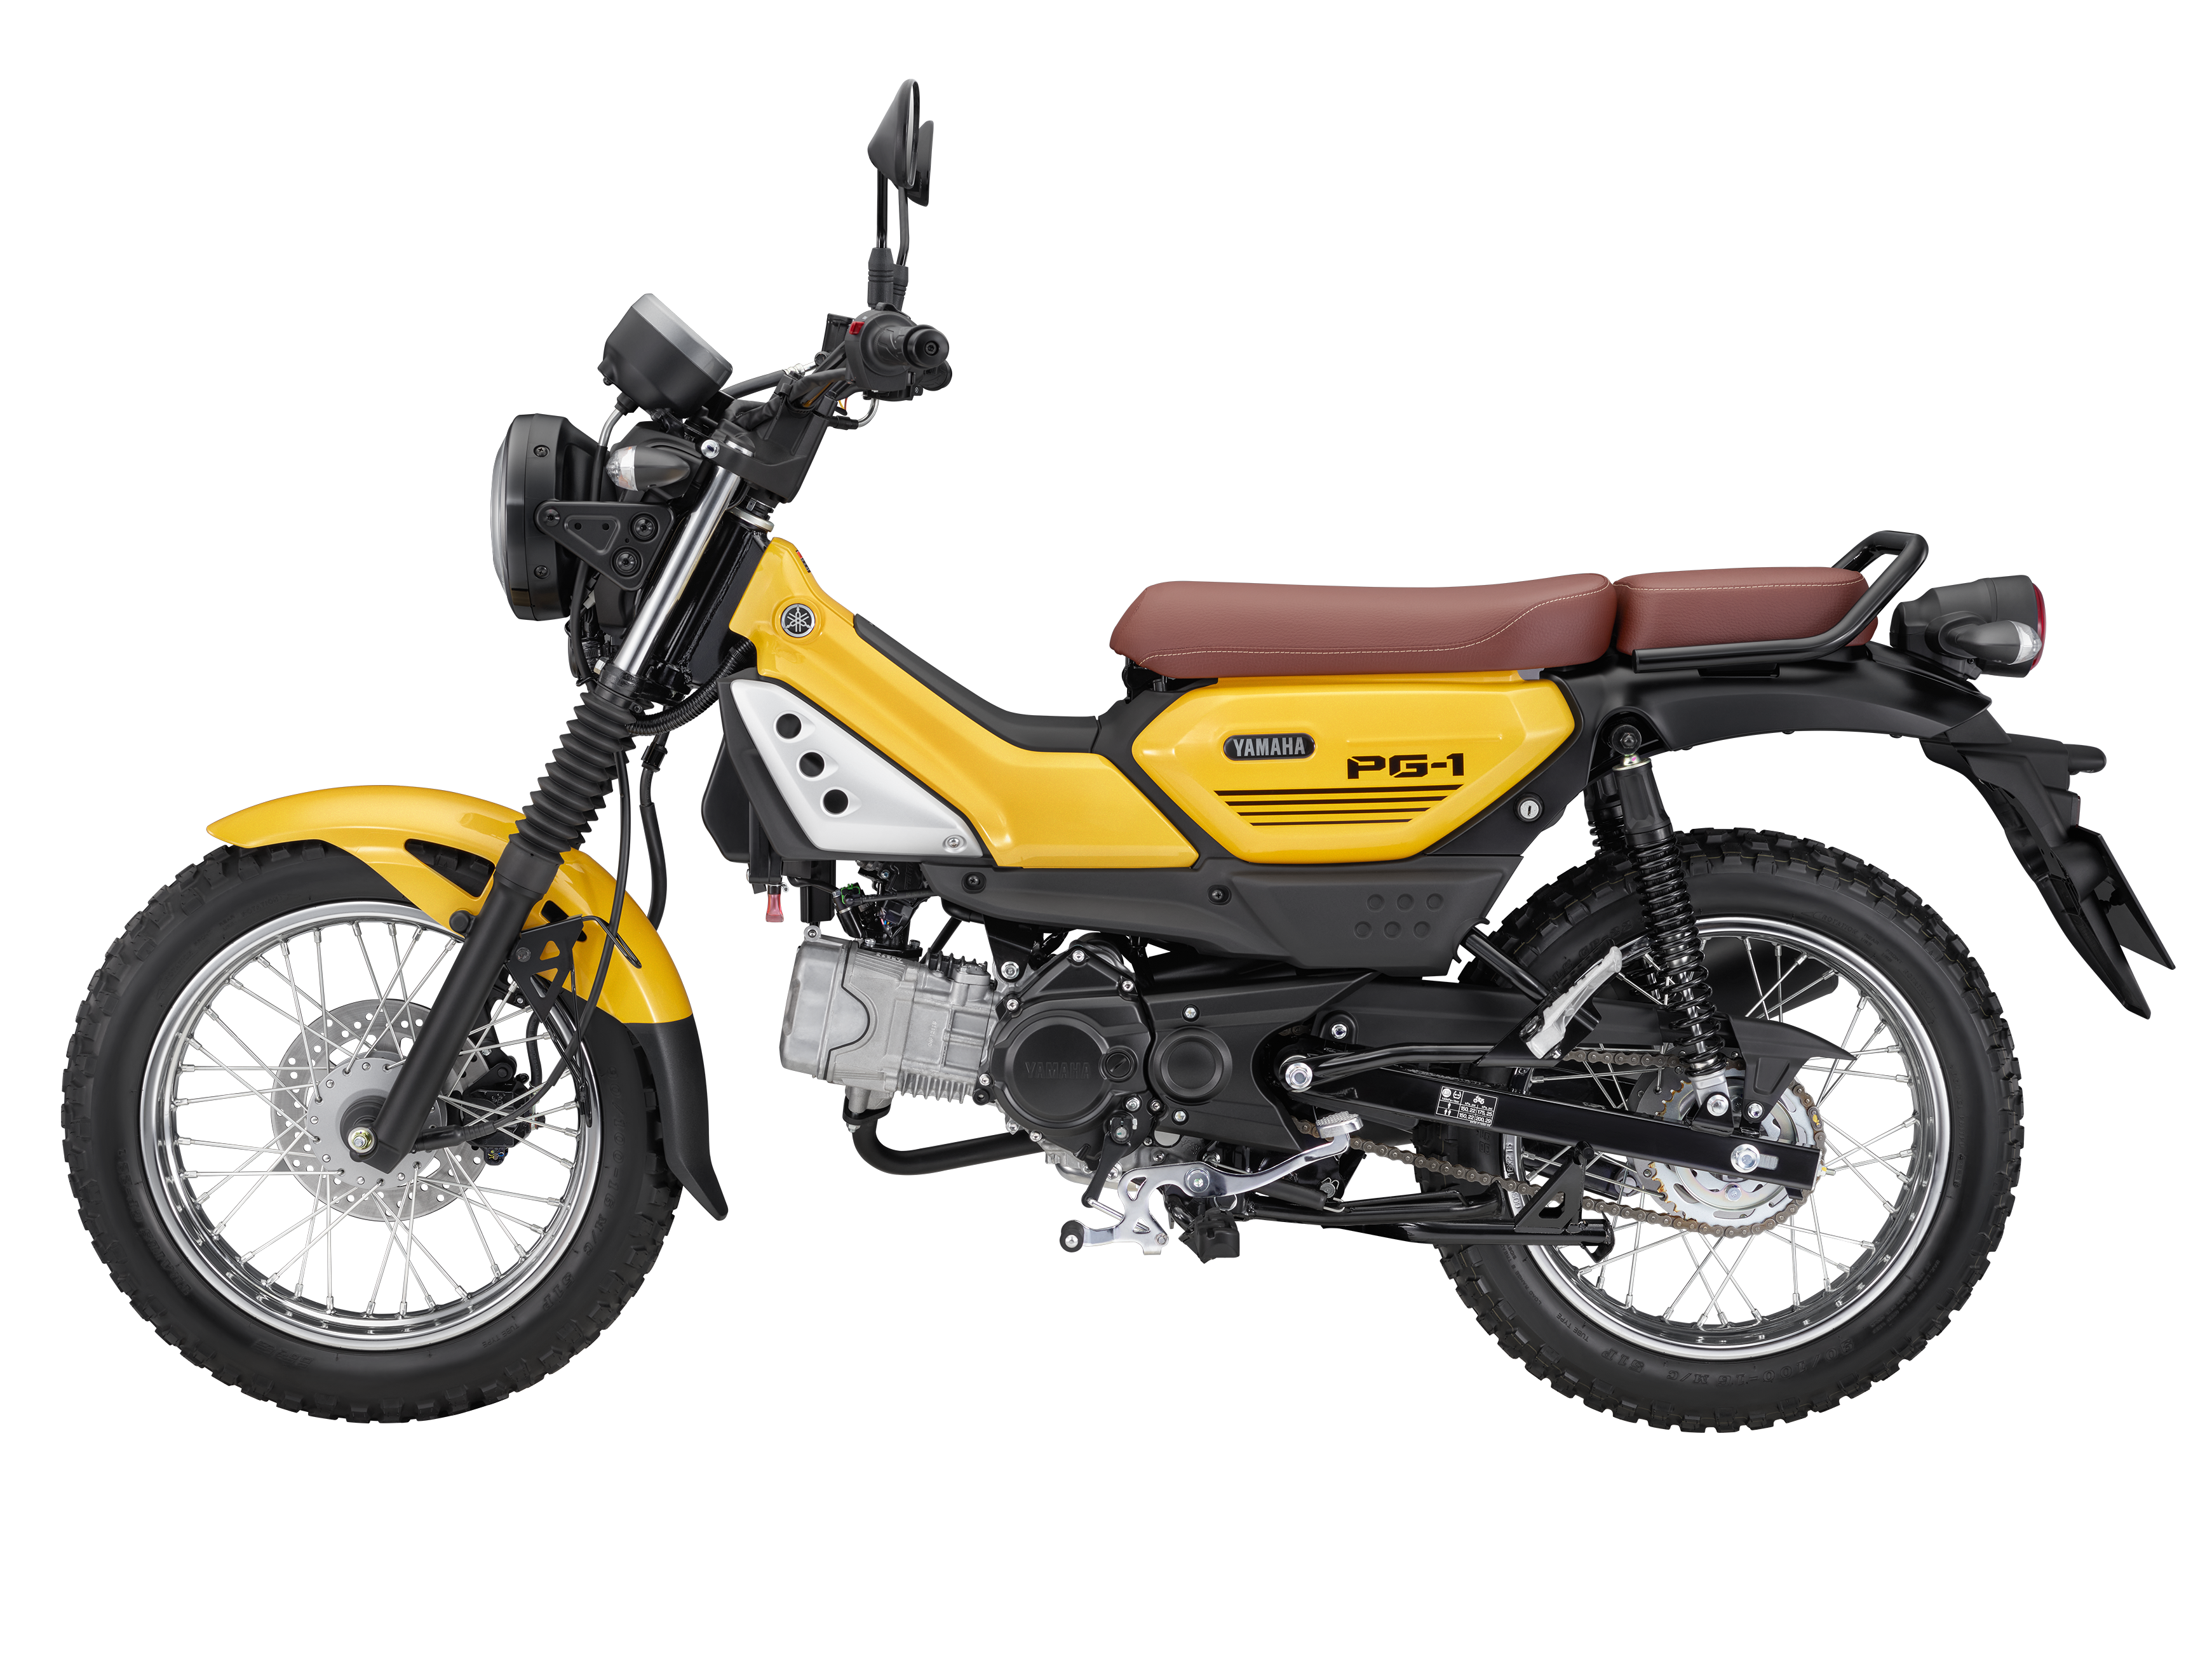 Yamaha ra mắt xe máy địa hình dáng lạ tại Việt Nam, giá 31 triệu đồng - 4